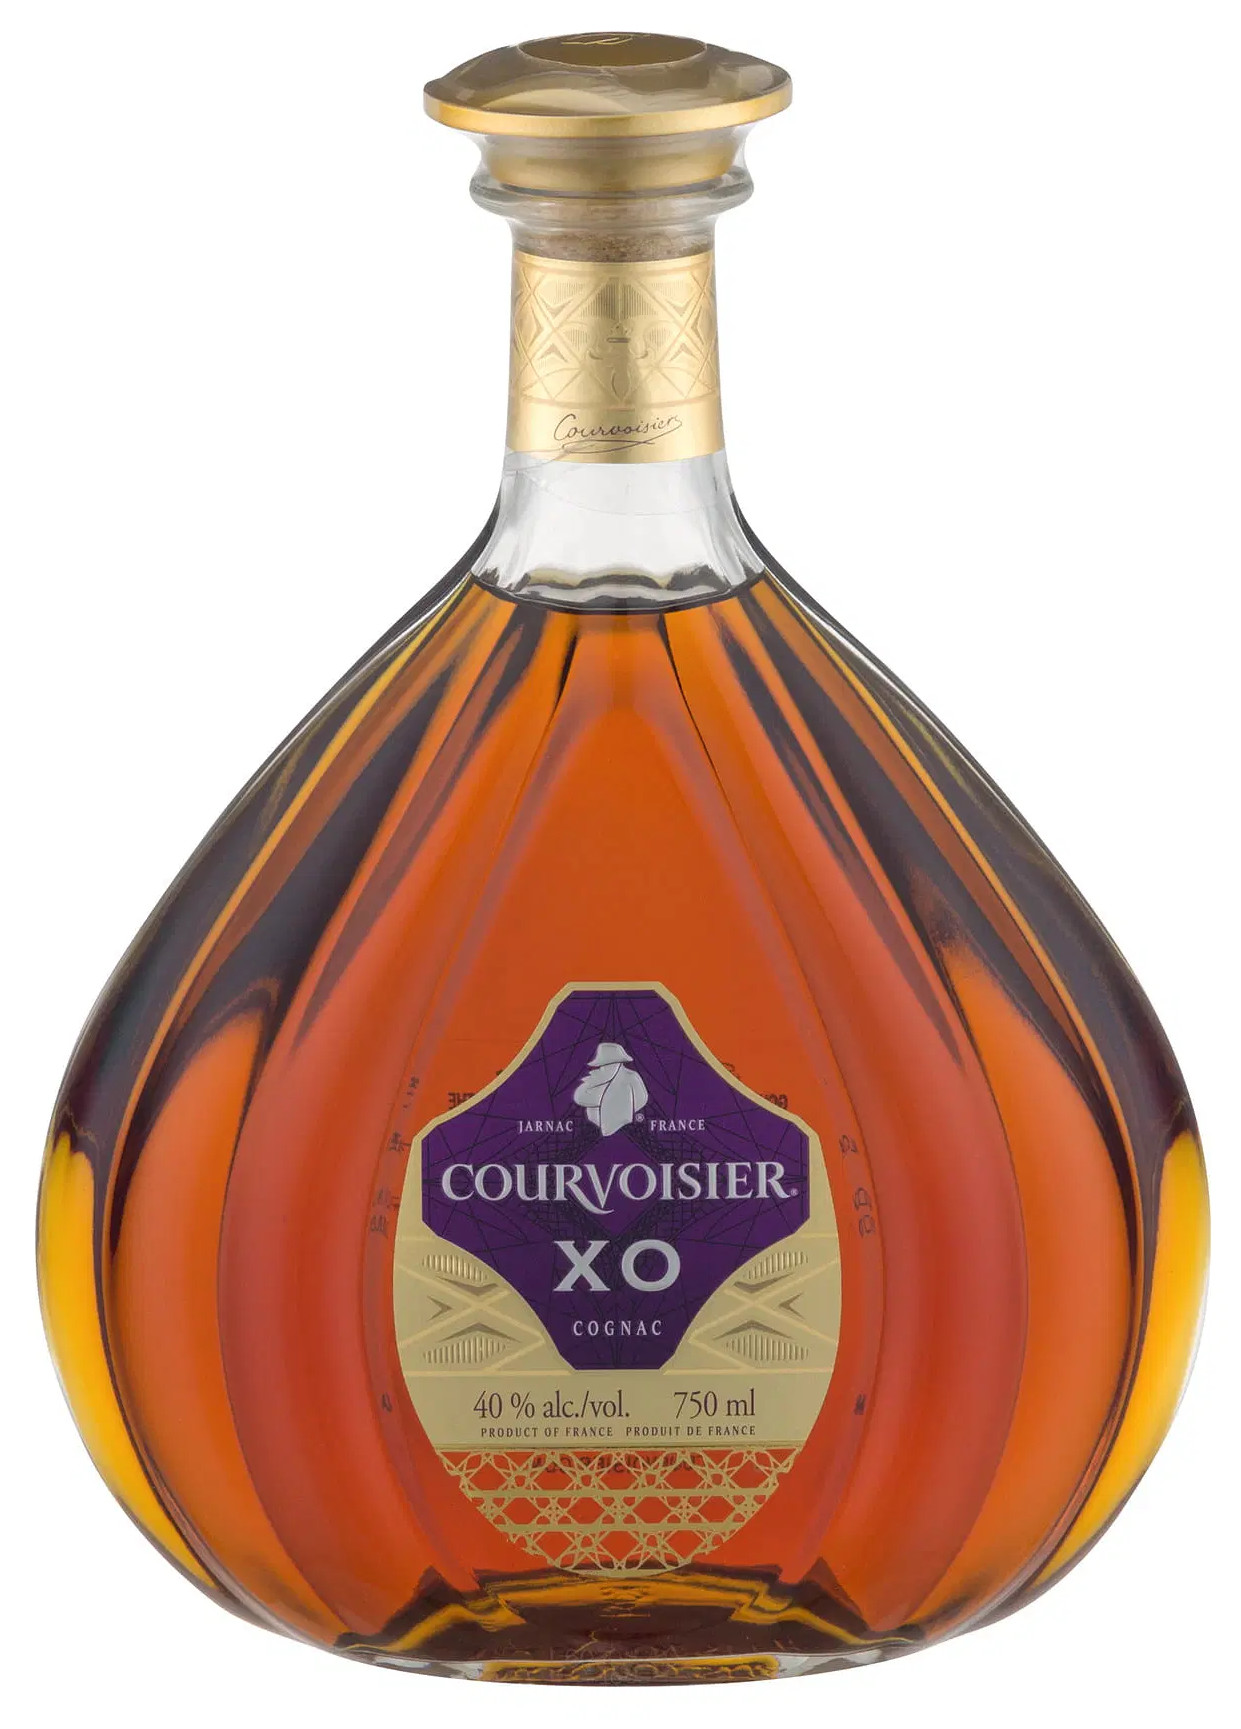 Courvoisier XO Cognac, 750.0 ml - image 1 of 4